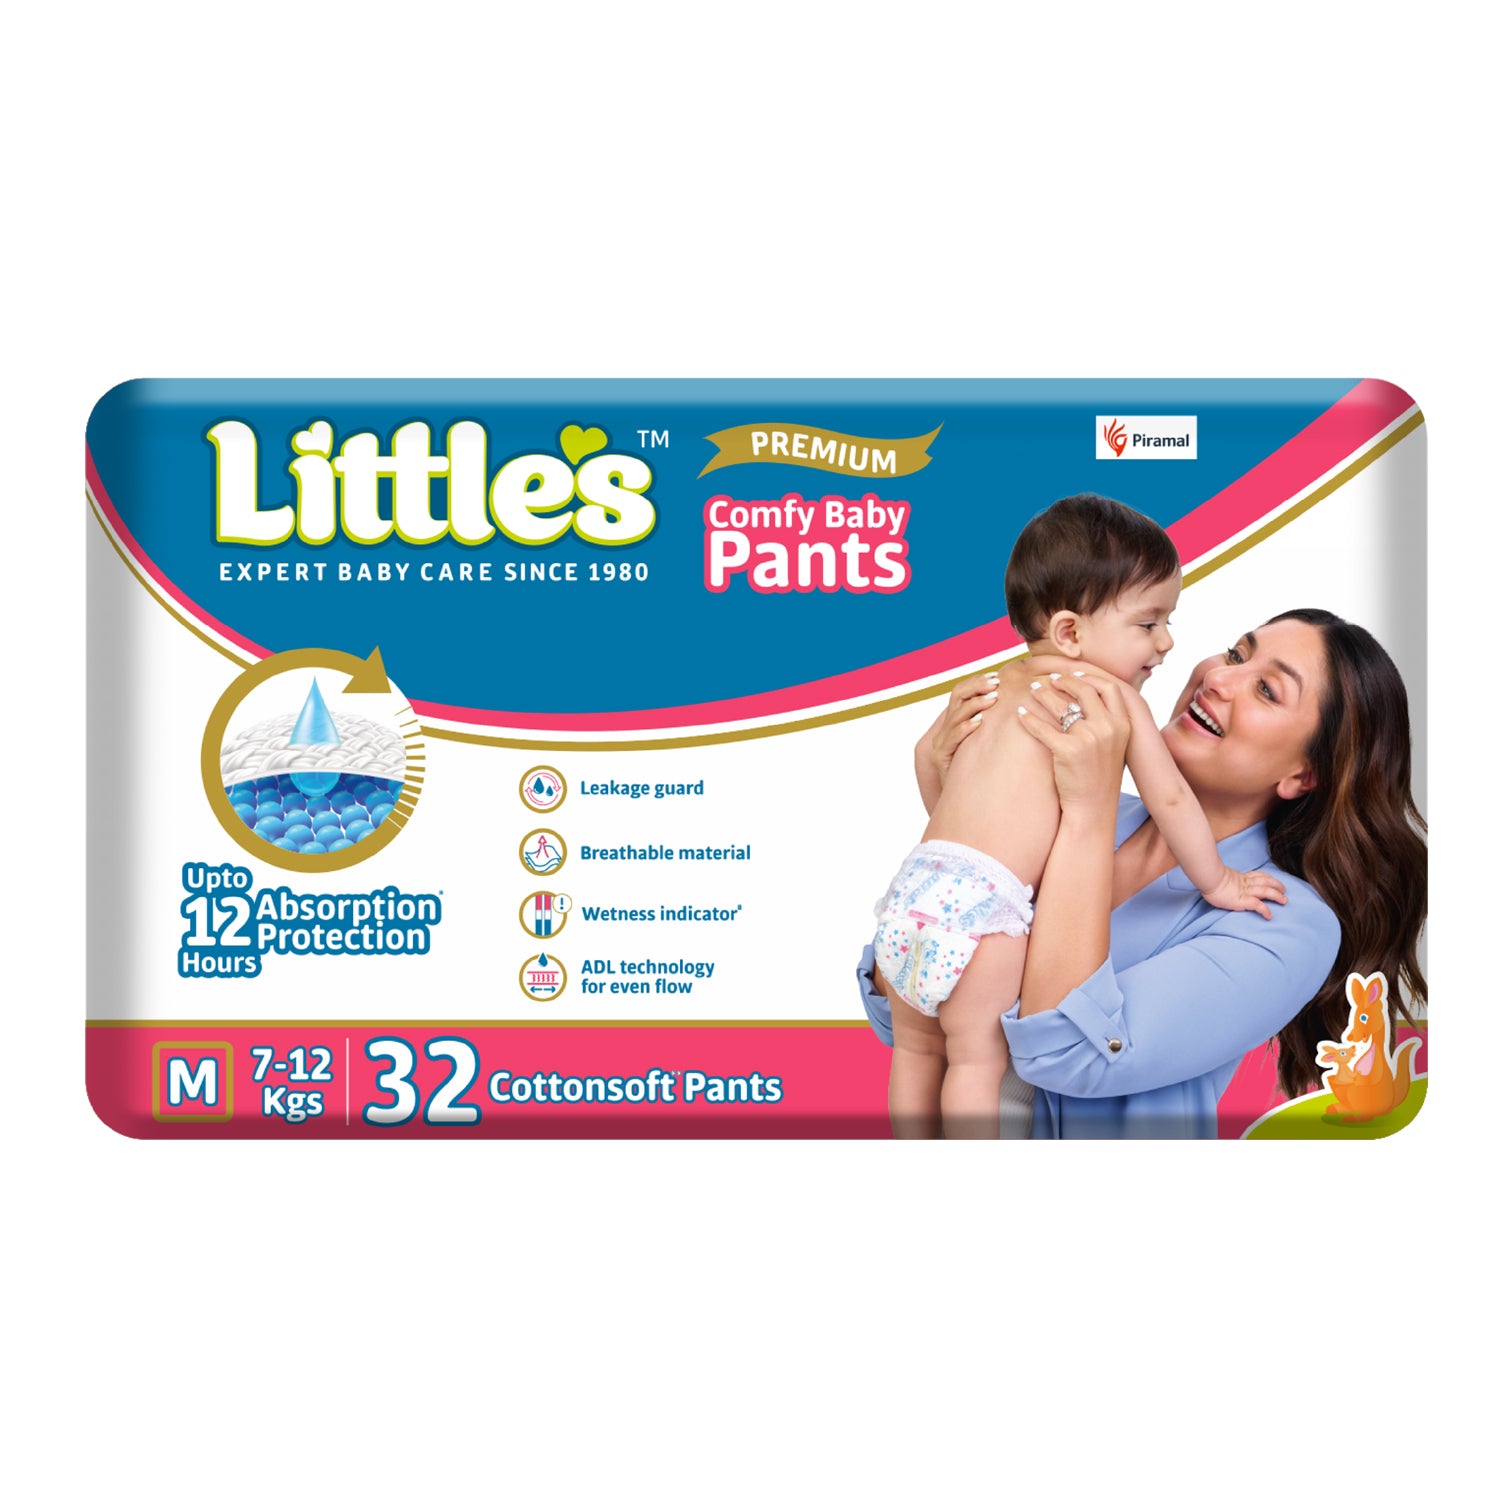 Buy Little's Comfy Baby Pants Online